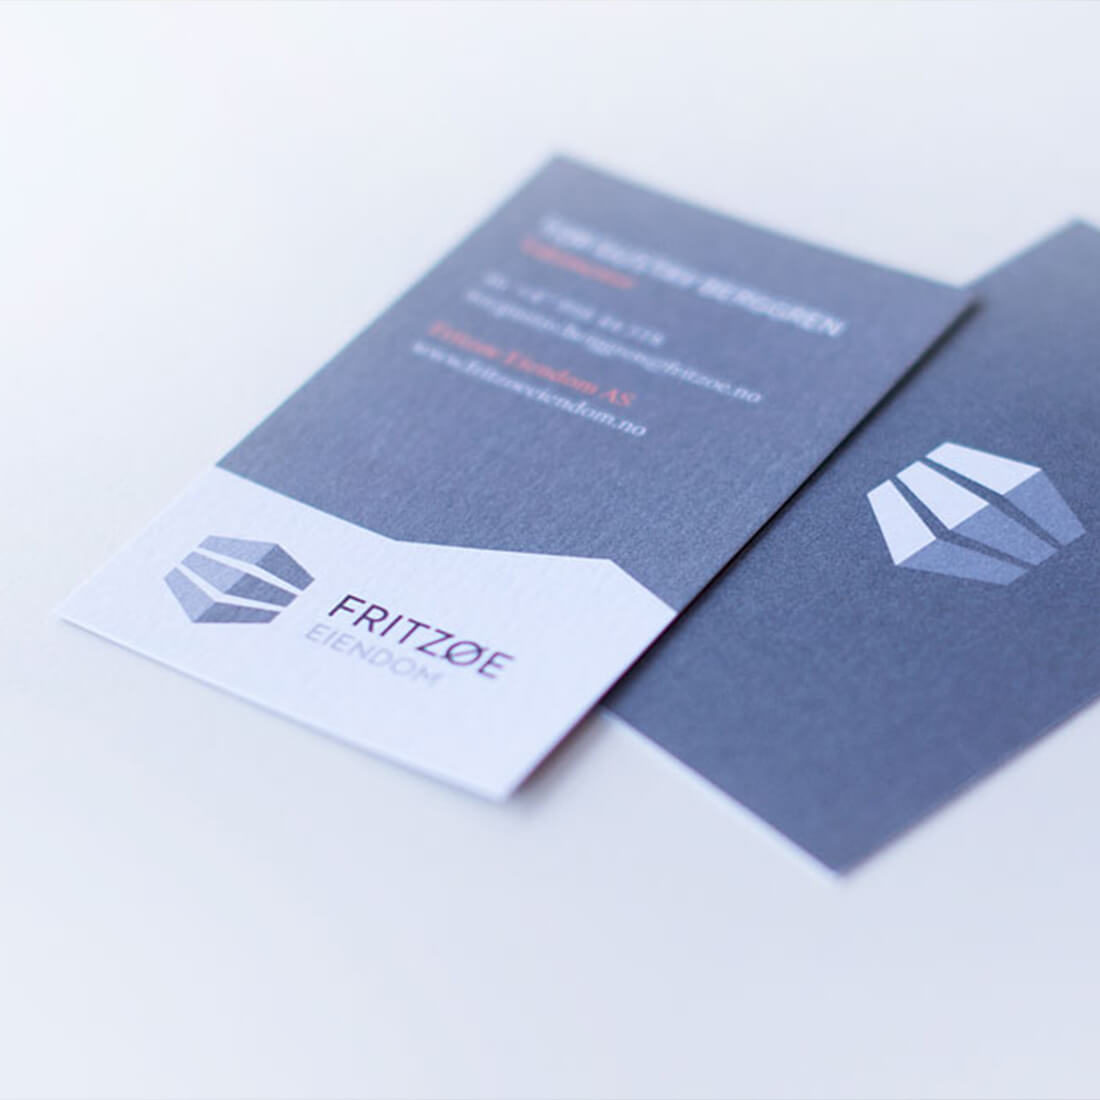 To stykk visitkort med Fritzøe Eiendom logo forside + bakside